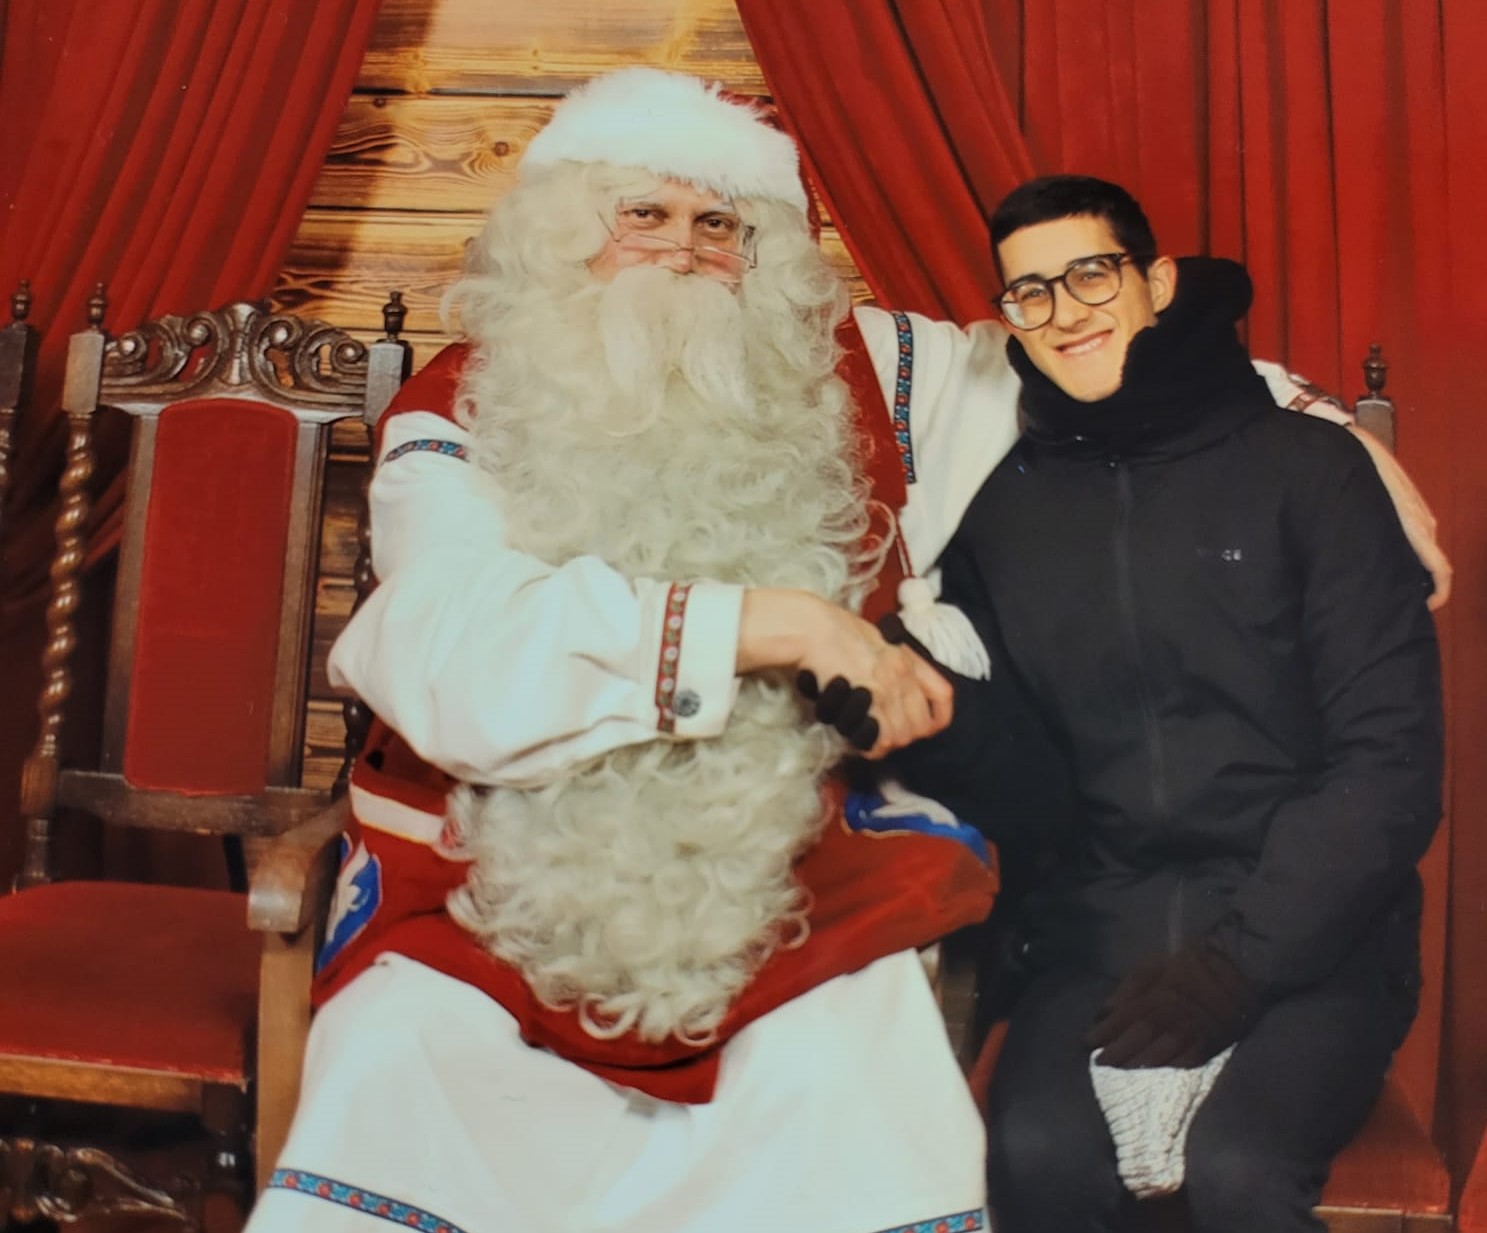 El Vicente assegut al costat del Pare Noel a Lapònia